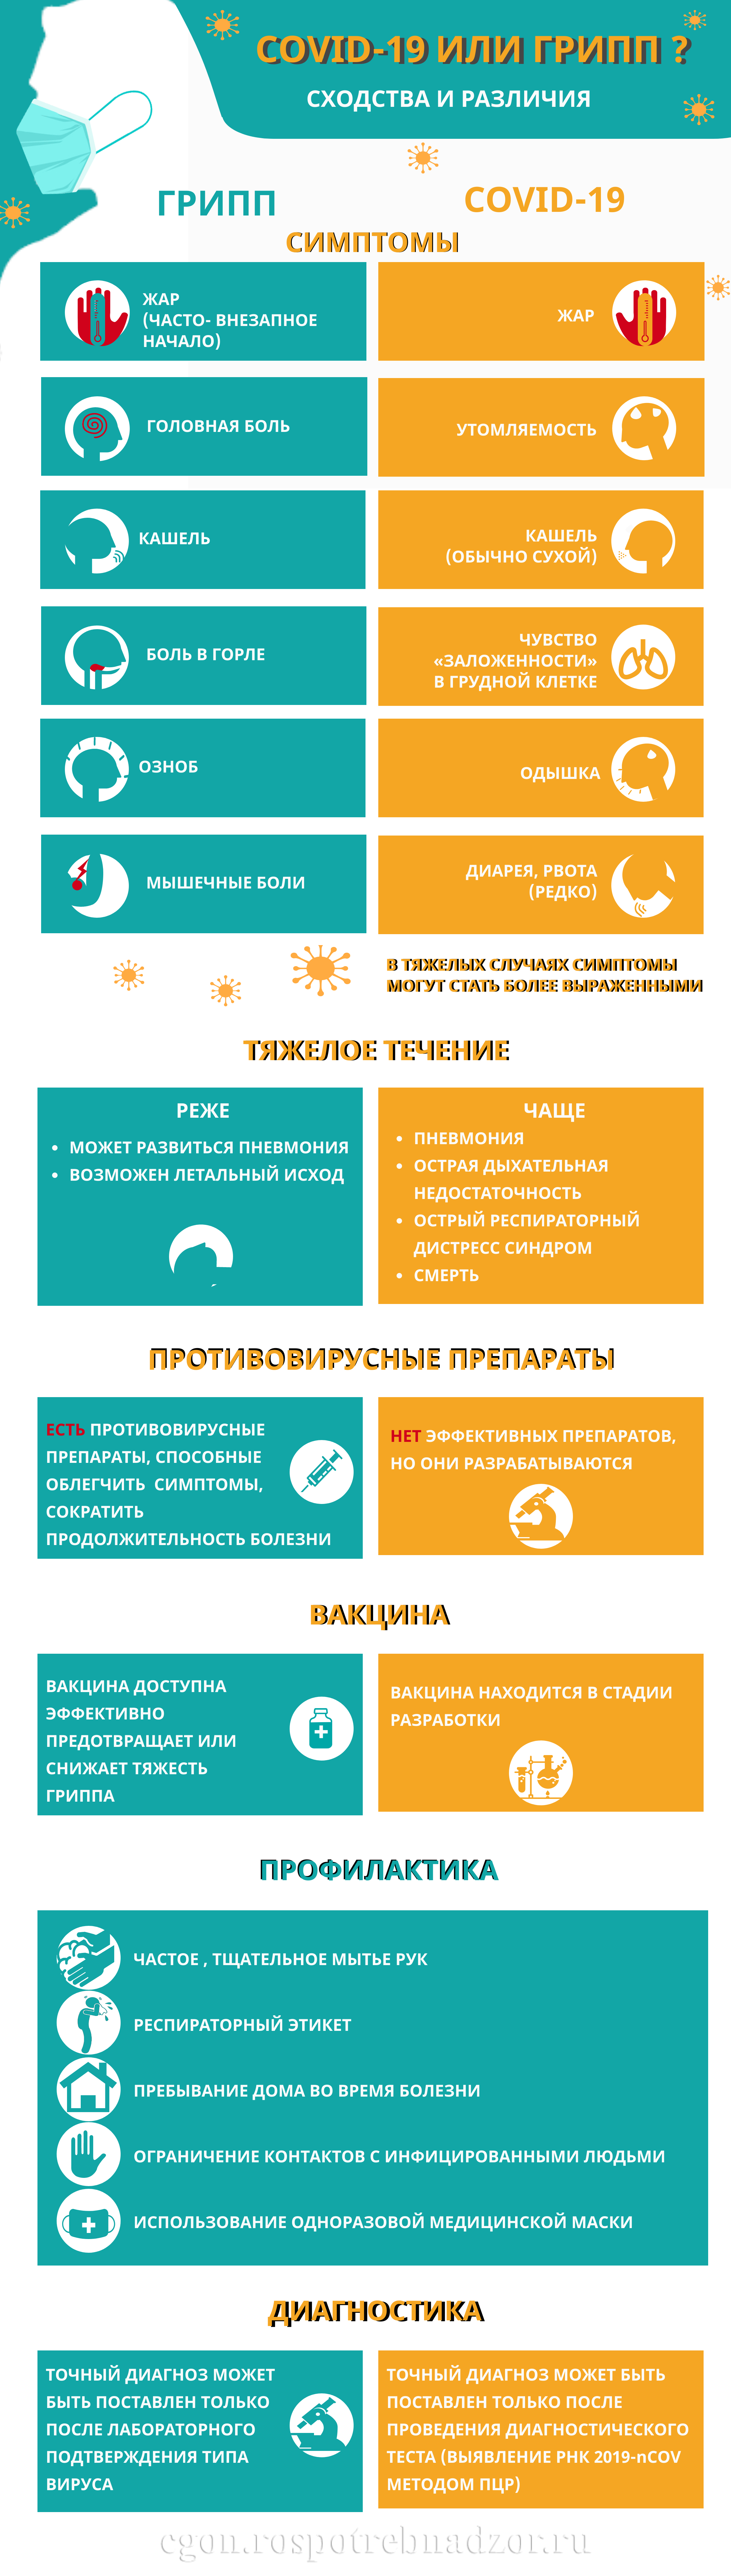 Управление Роспотребнадзора по Тверской области о новой коронавирусной инфекции